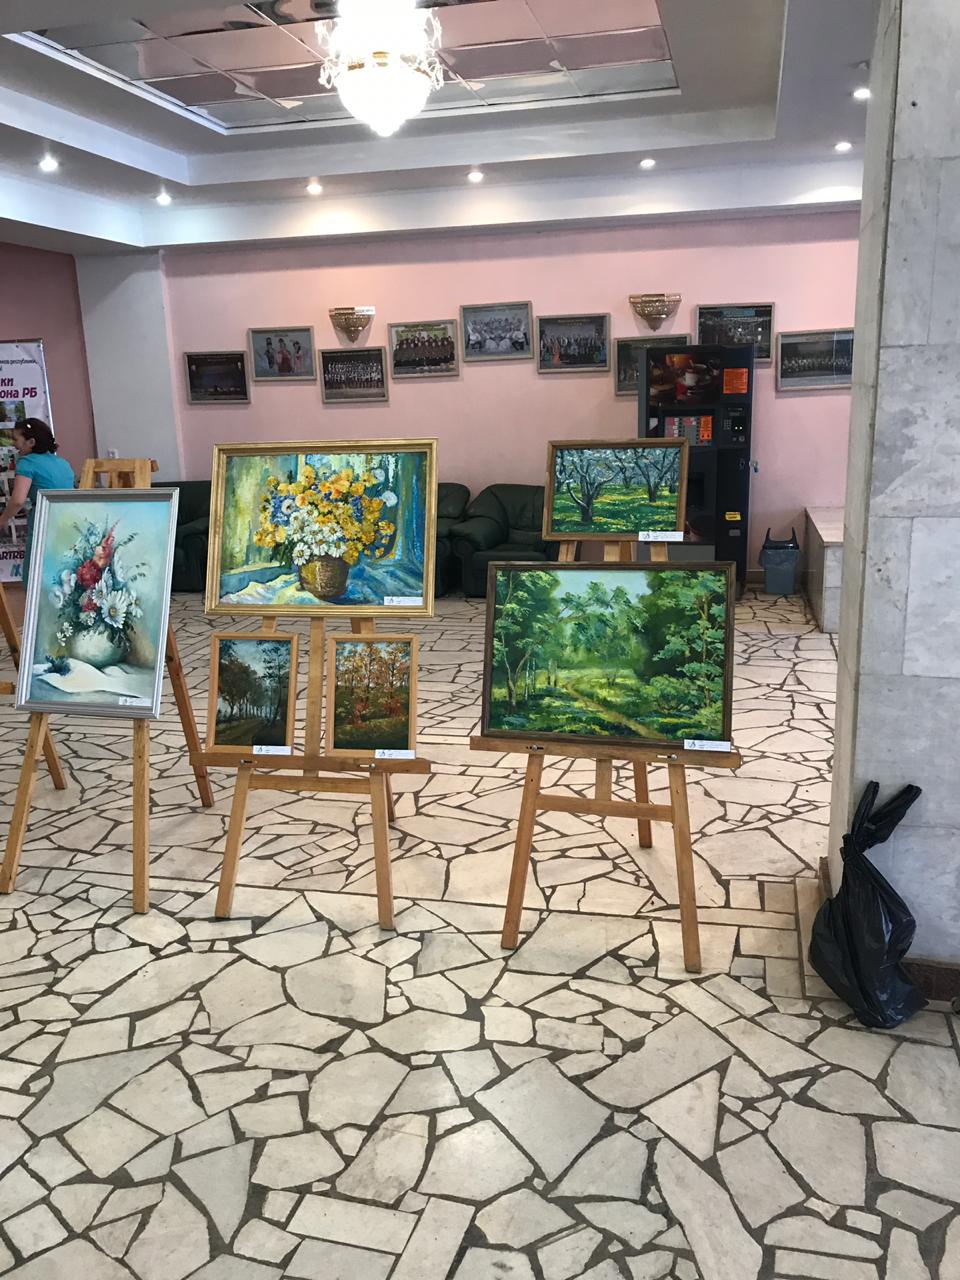 Художественный тур проекта «Любимые художники Башкирии»: выставка художников в Доме культуры г. Дюртюли